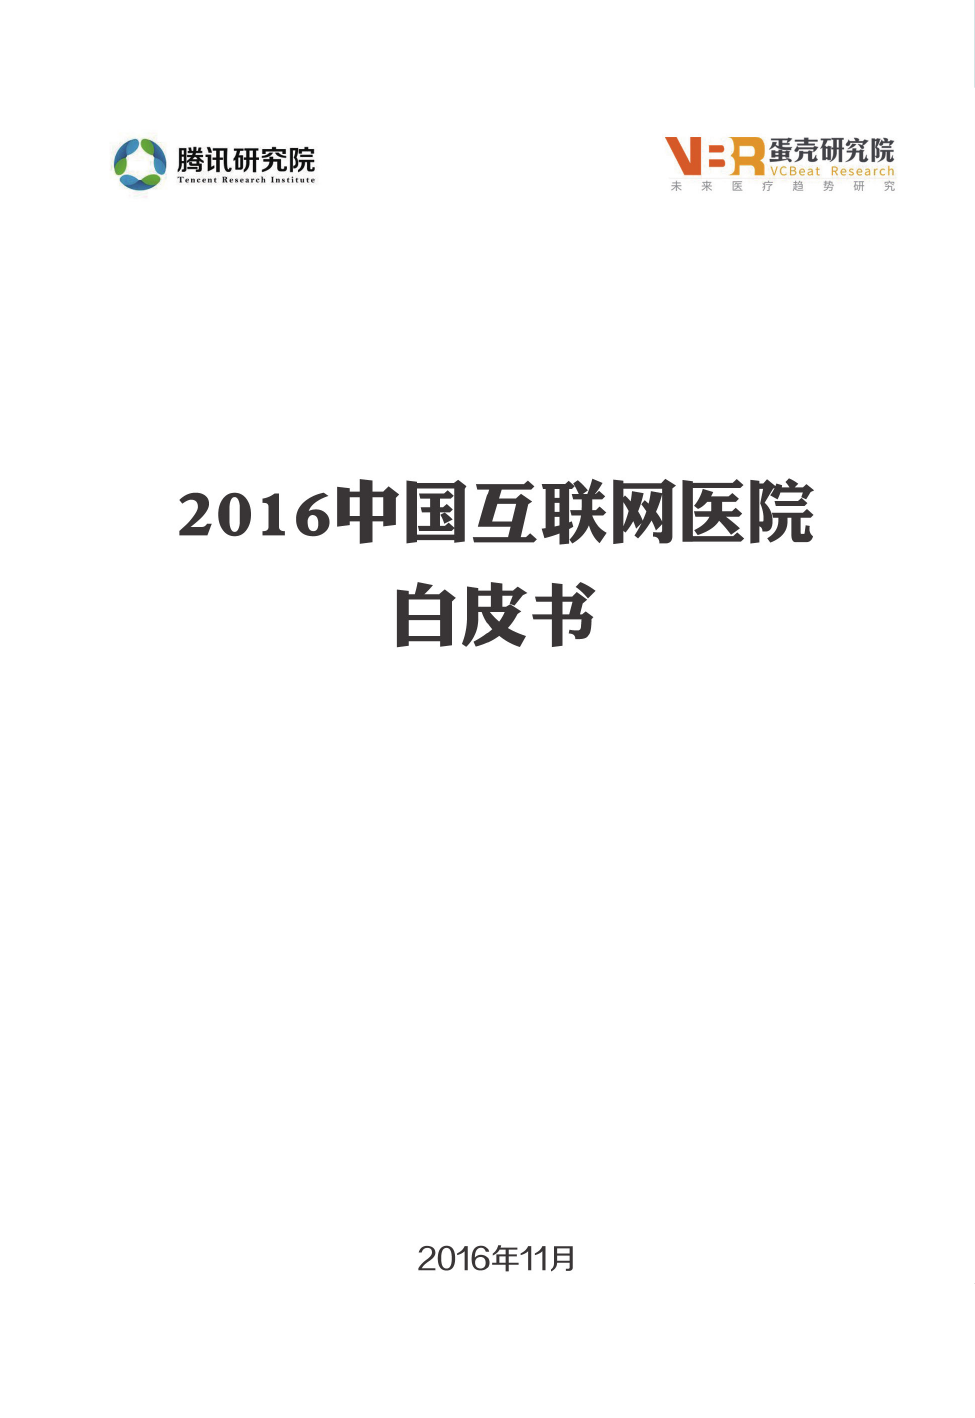 蛋壳研究院-2016中国互联网医院白皮书（医疗）-2016.11